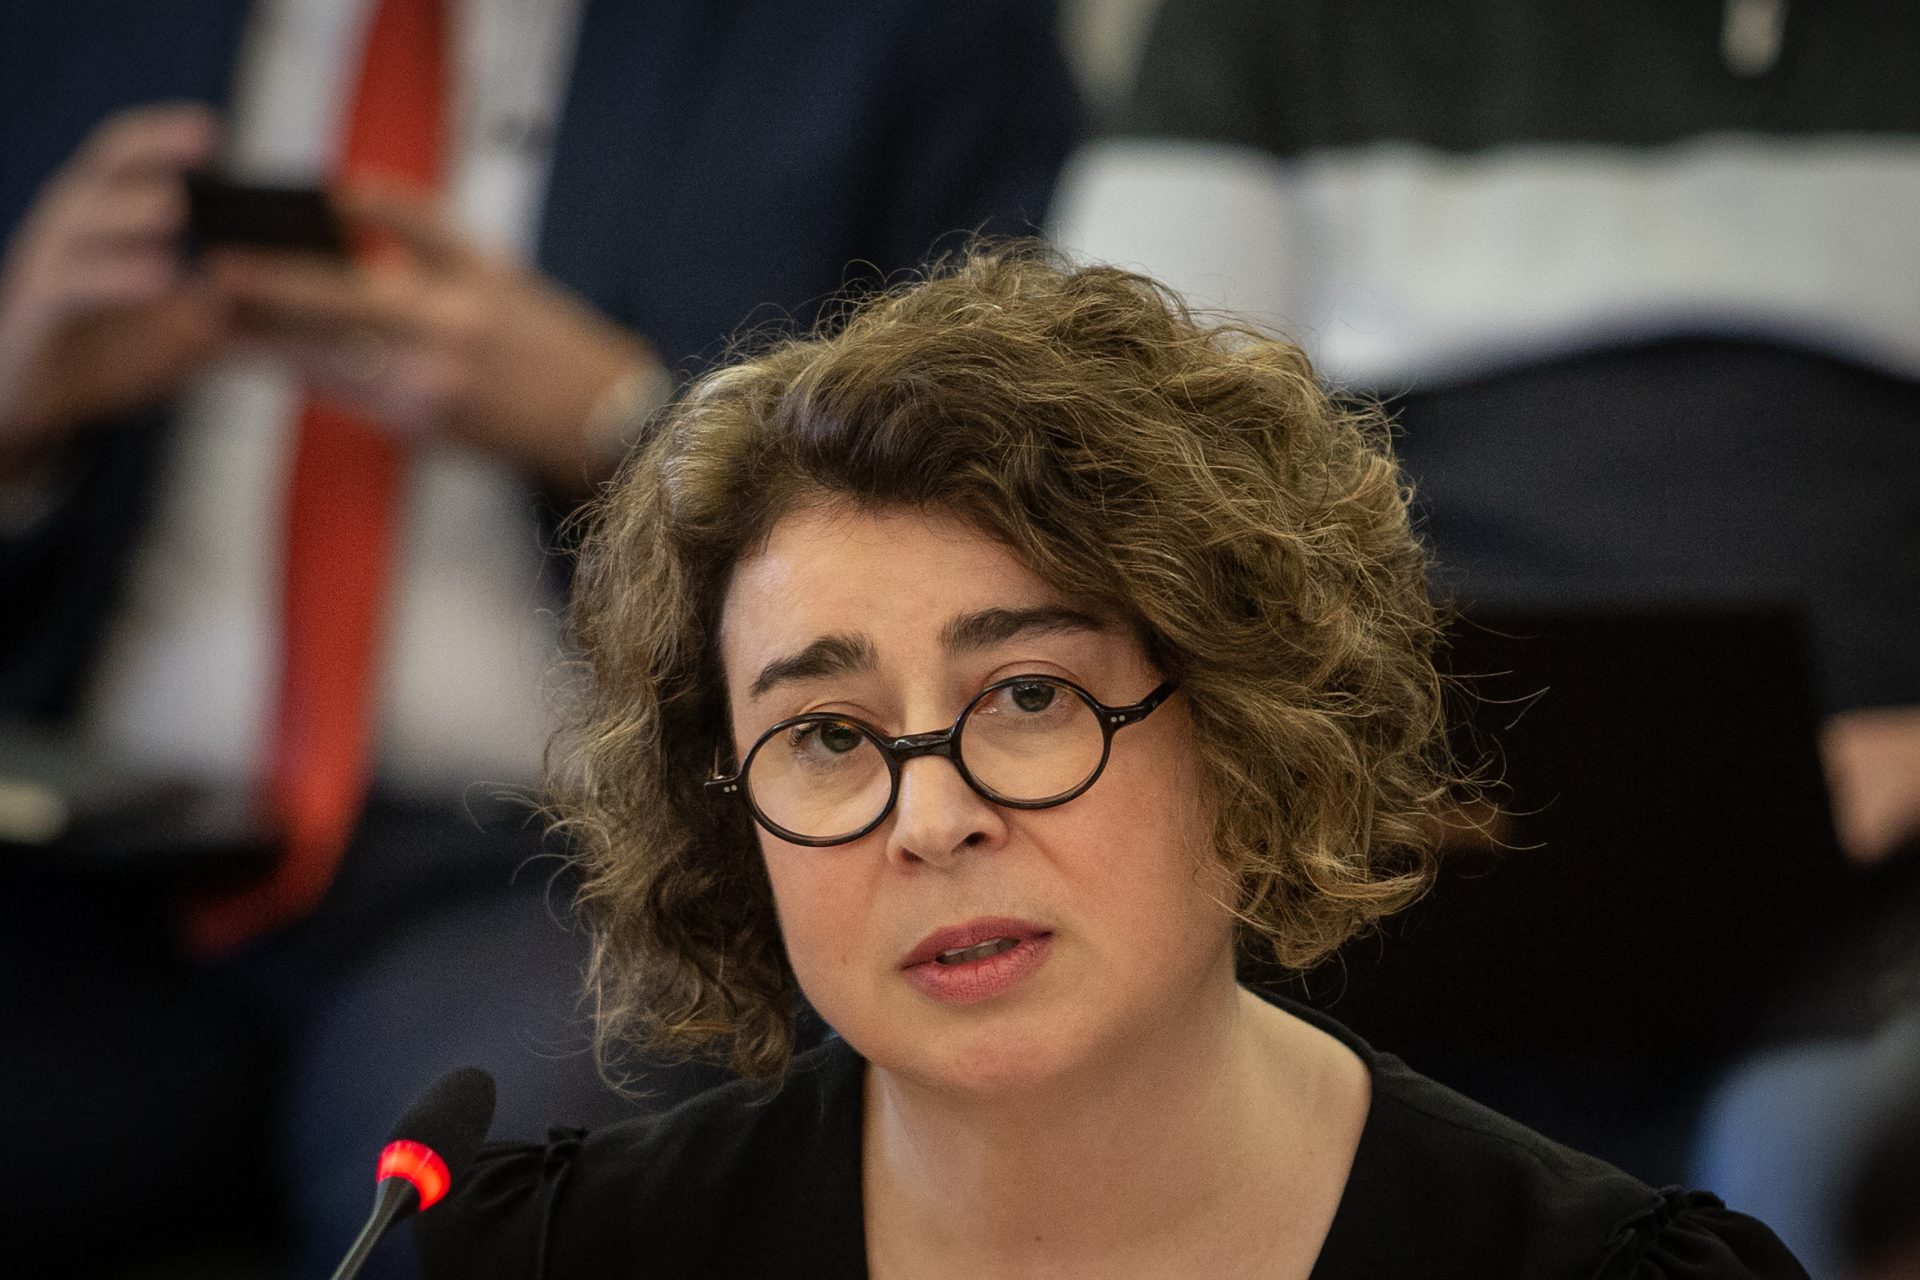 TAP multada em 50 mil euros por informação “não verdadeira” sobre Alexandra Reis